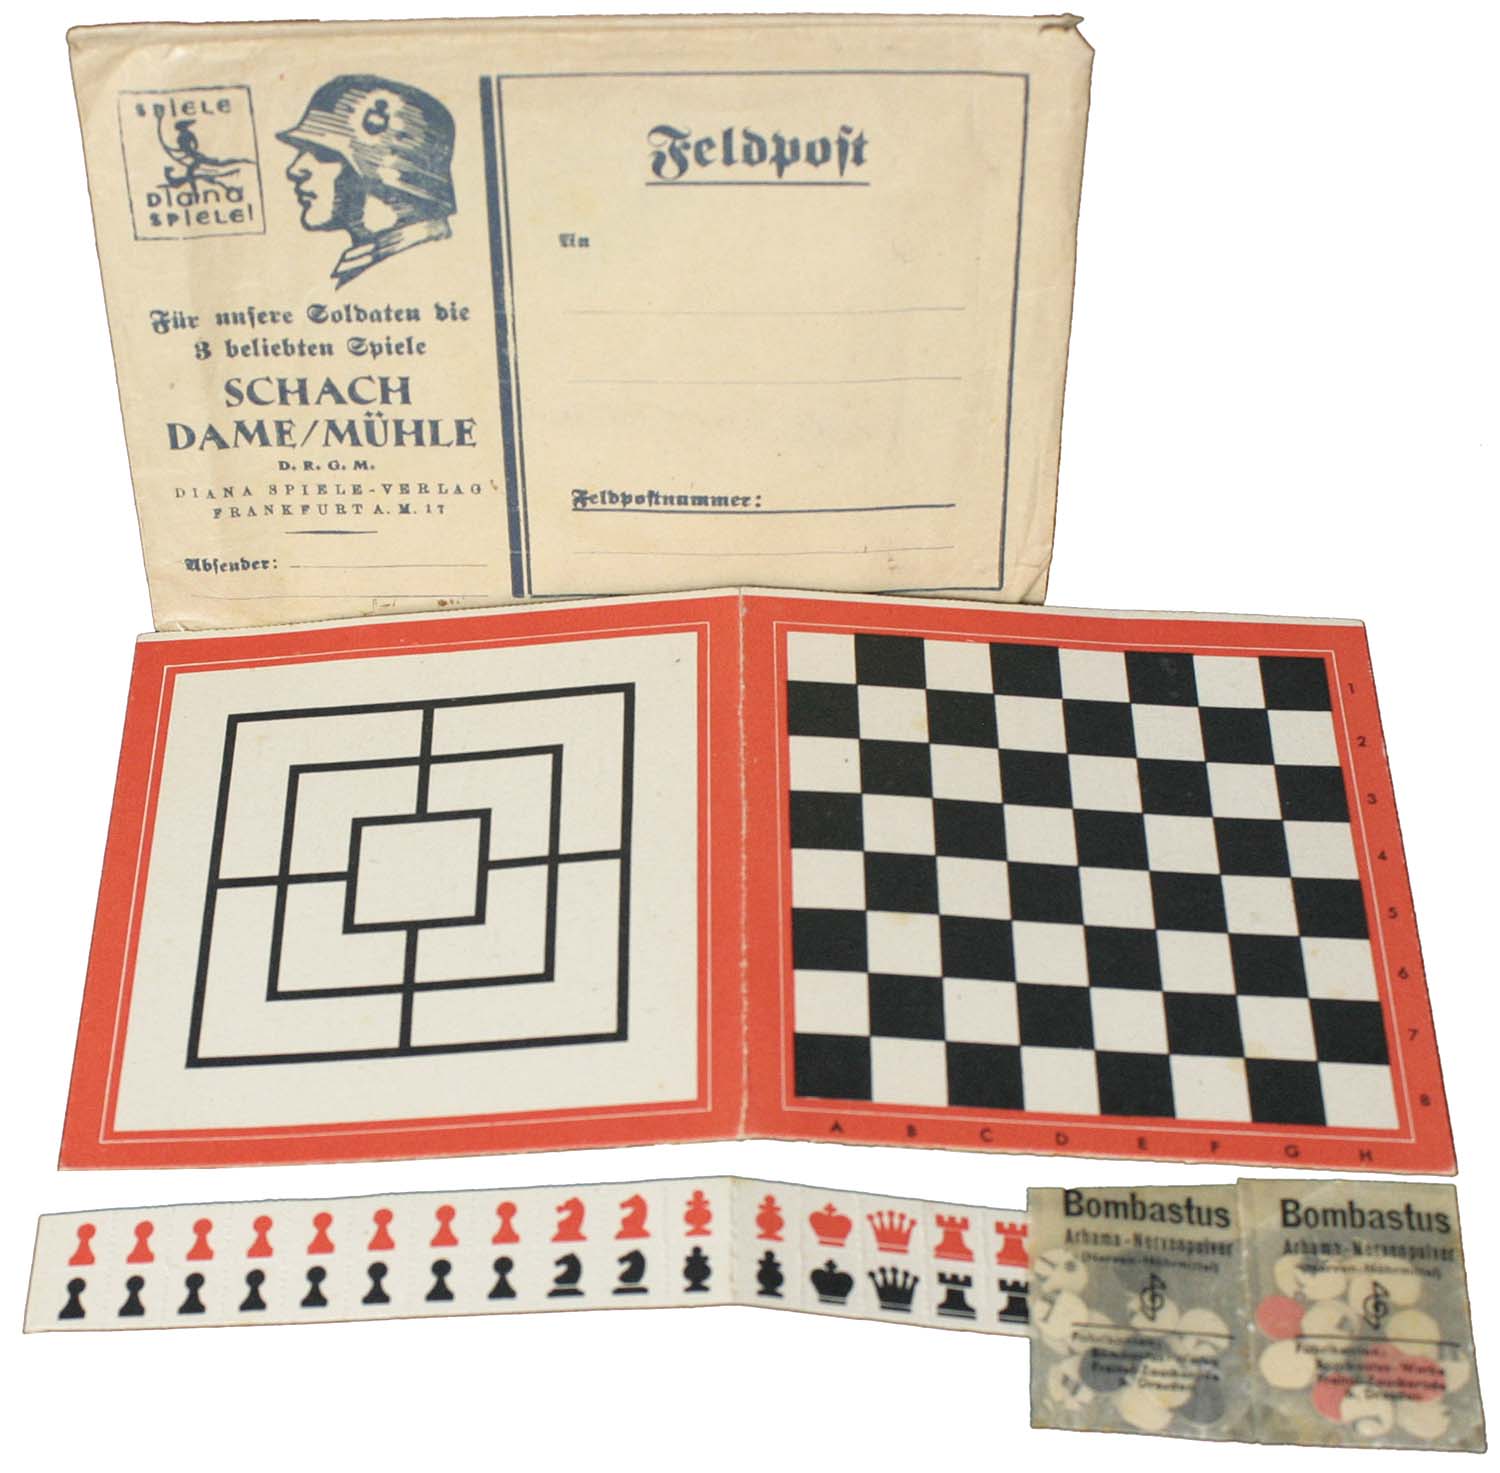 Schach/Dame und Mühle Feldpost (Soldier’s Chess/Checkers game)